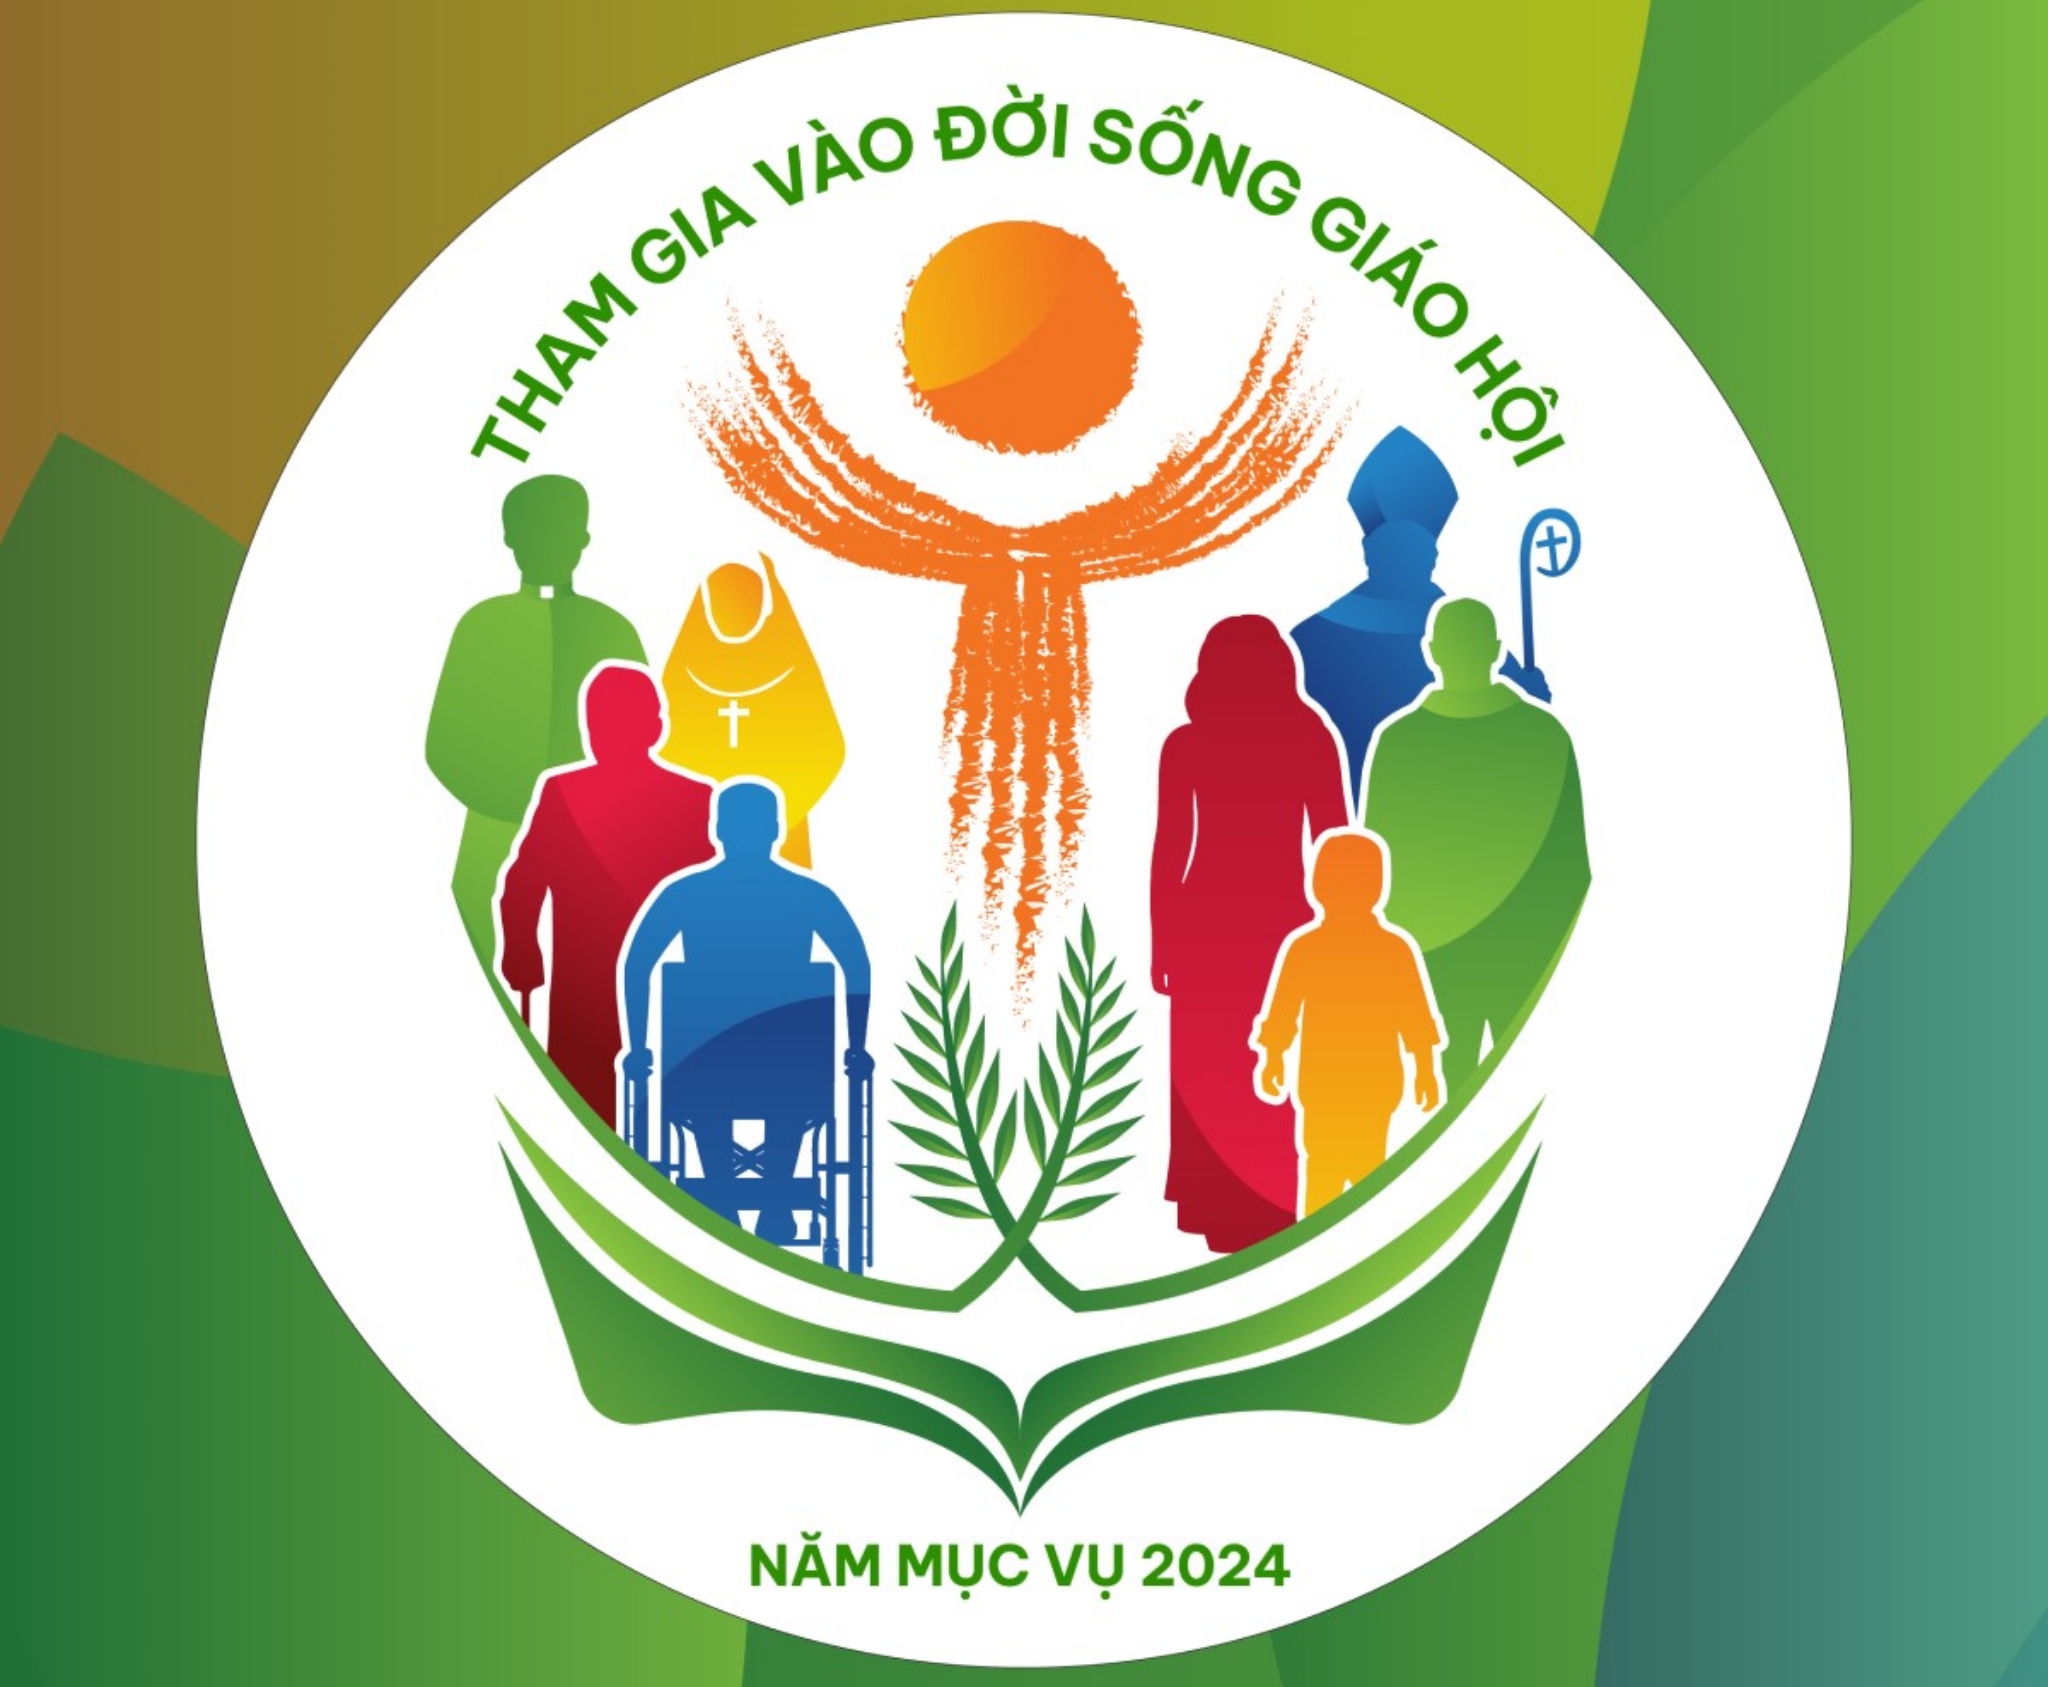 Năm mục vụ 2024 HĐGM Việt Nam_phailamgi.jpg